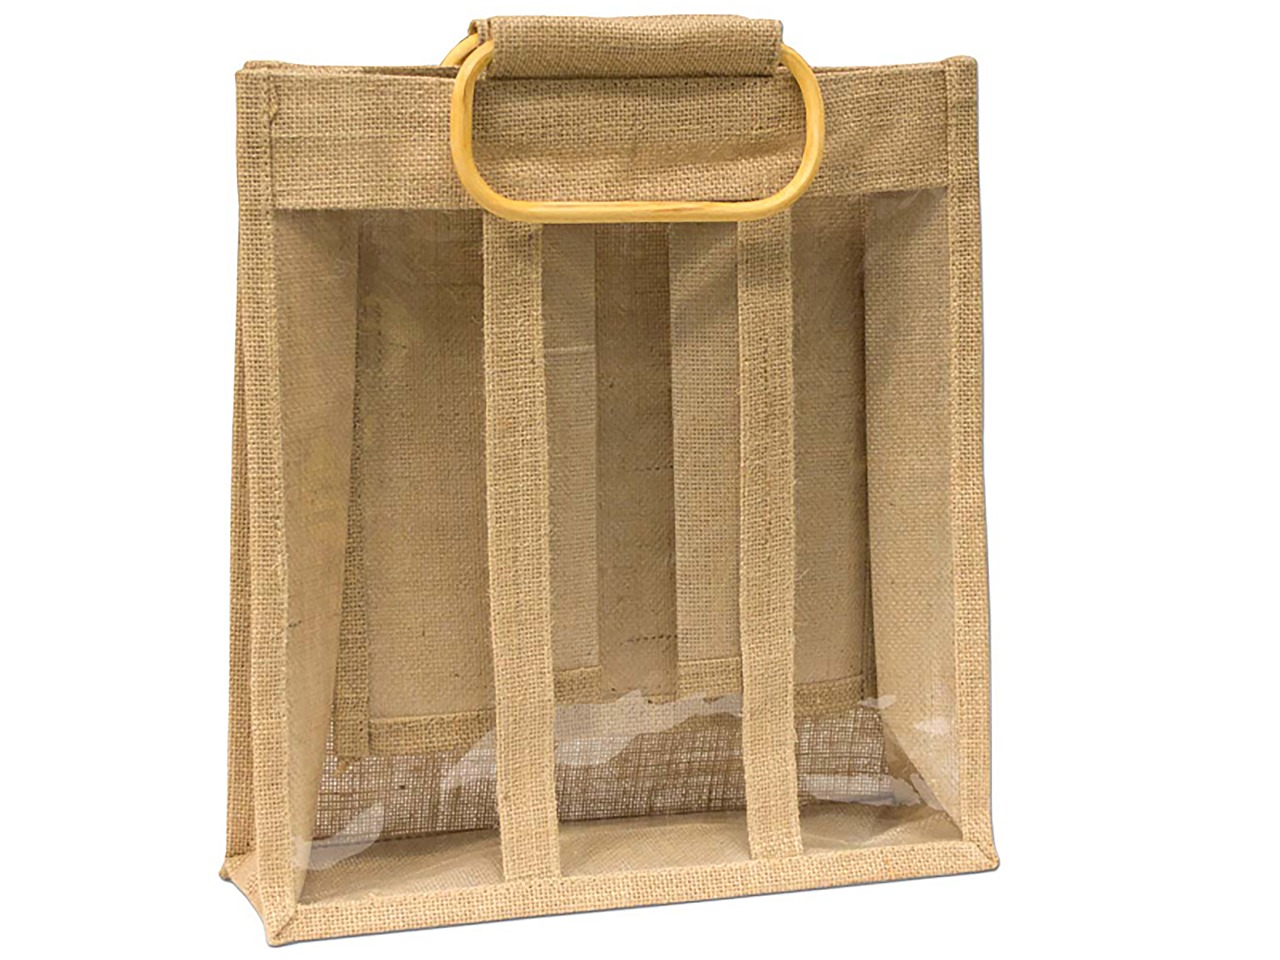 Unique Bags - Interesting Purses, Spring 2014 | Unique bags, Bags, Purses